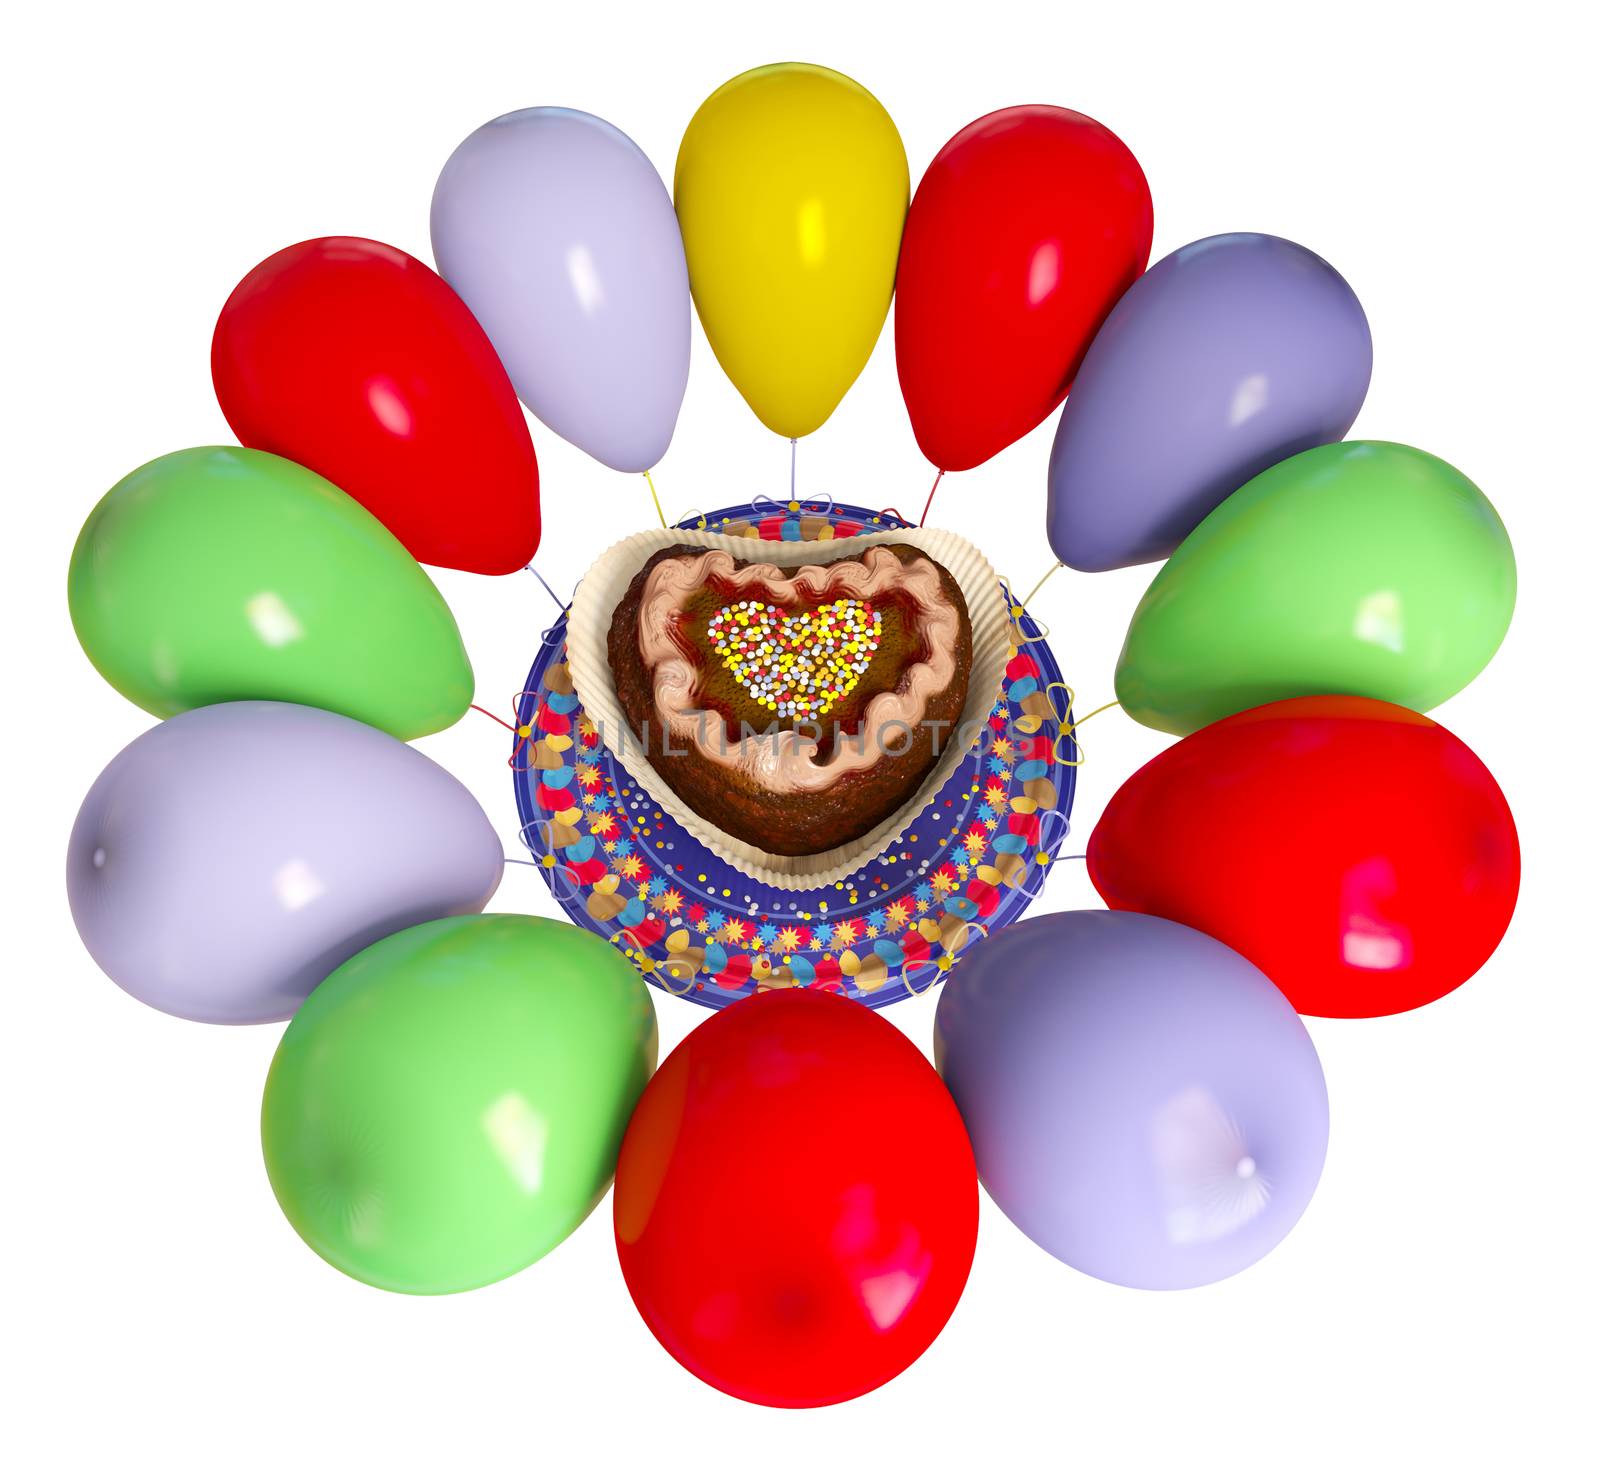 birthday decorative cake and balloons celebration background on isolate white